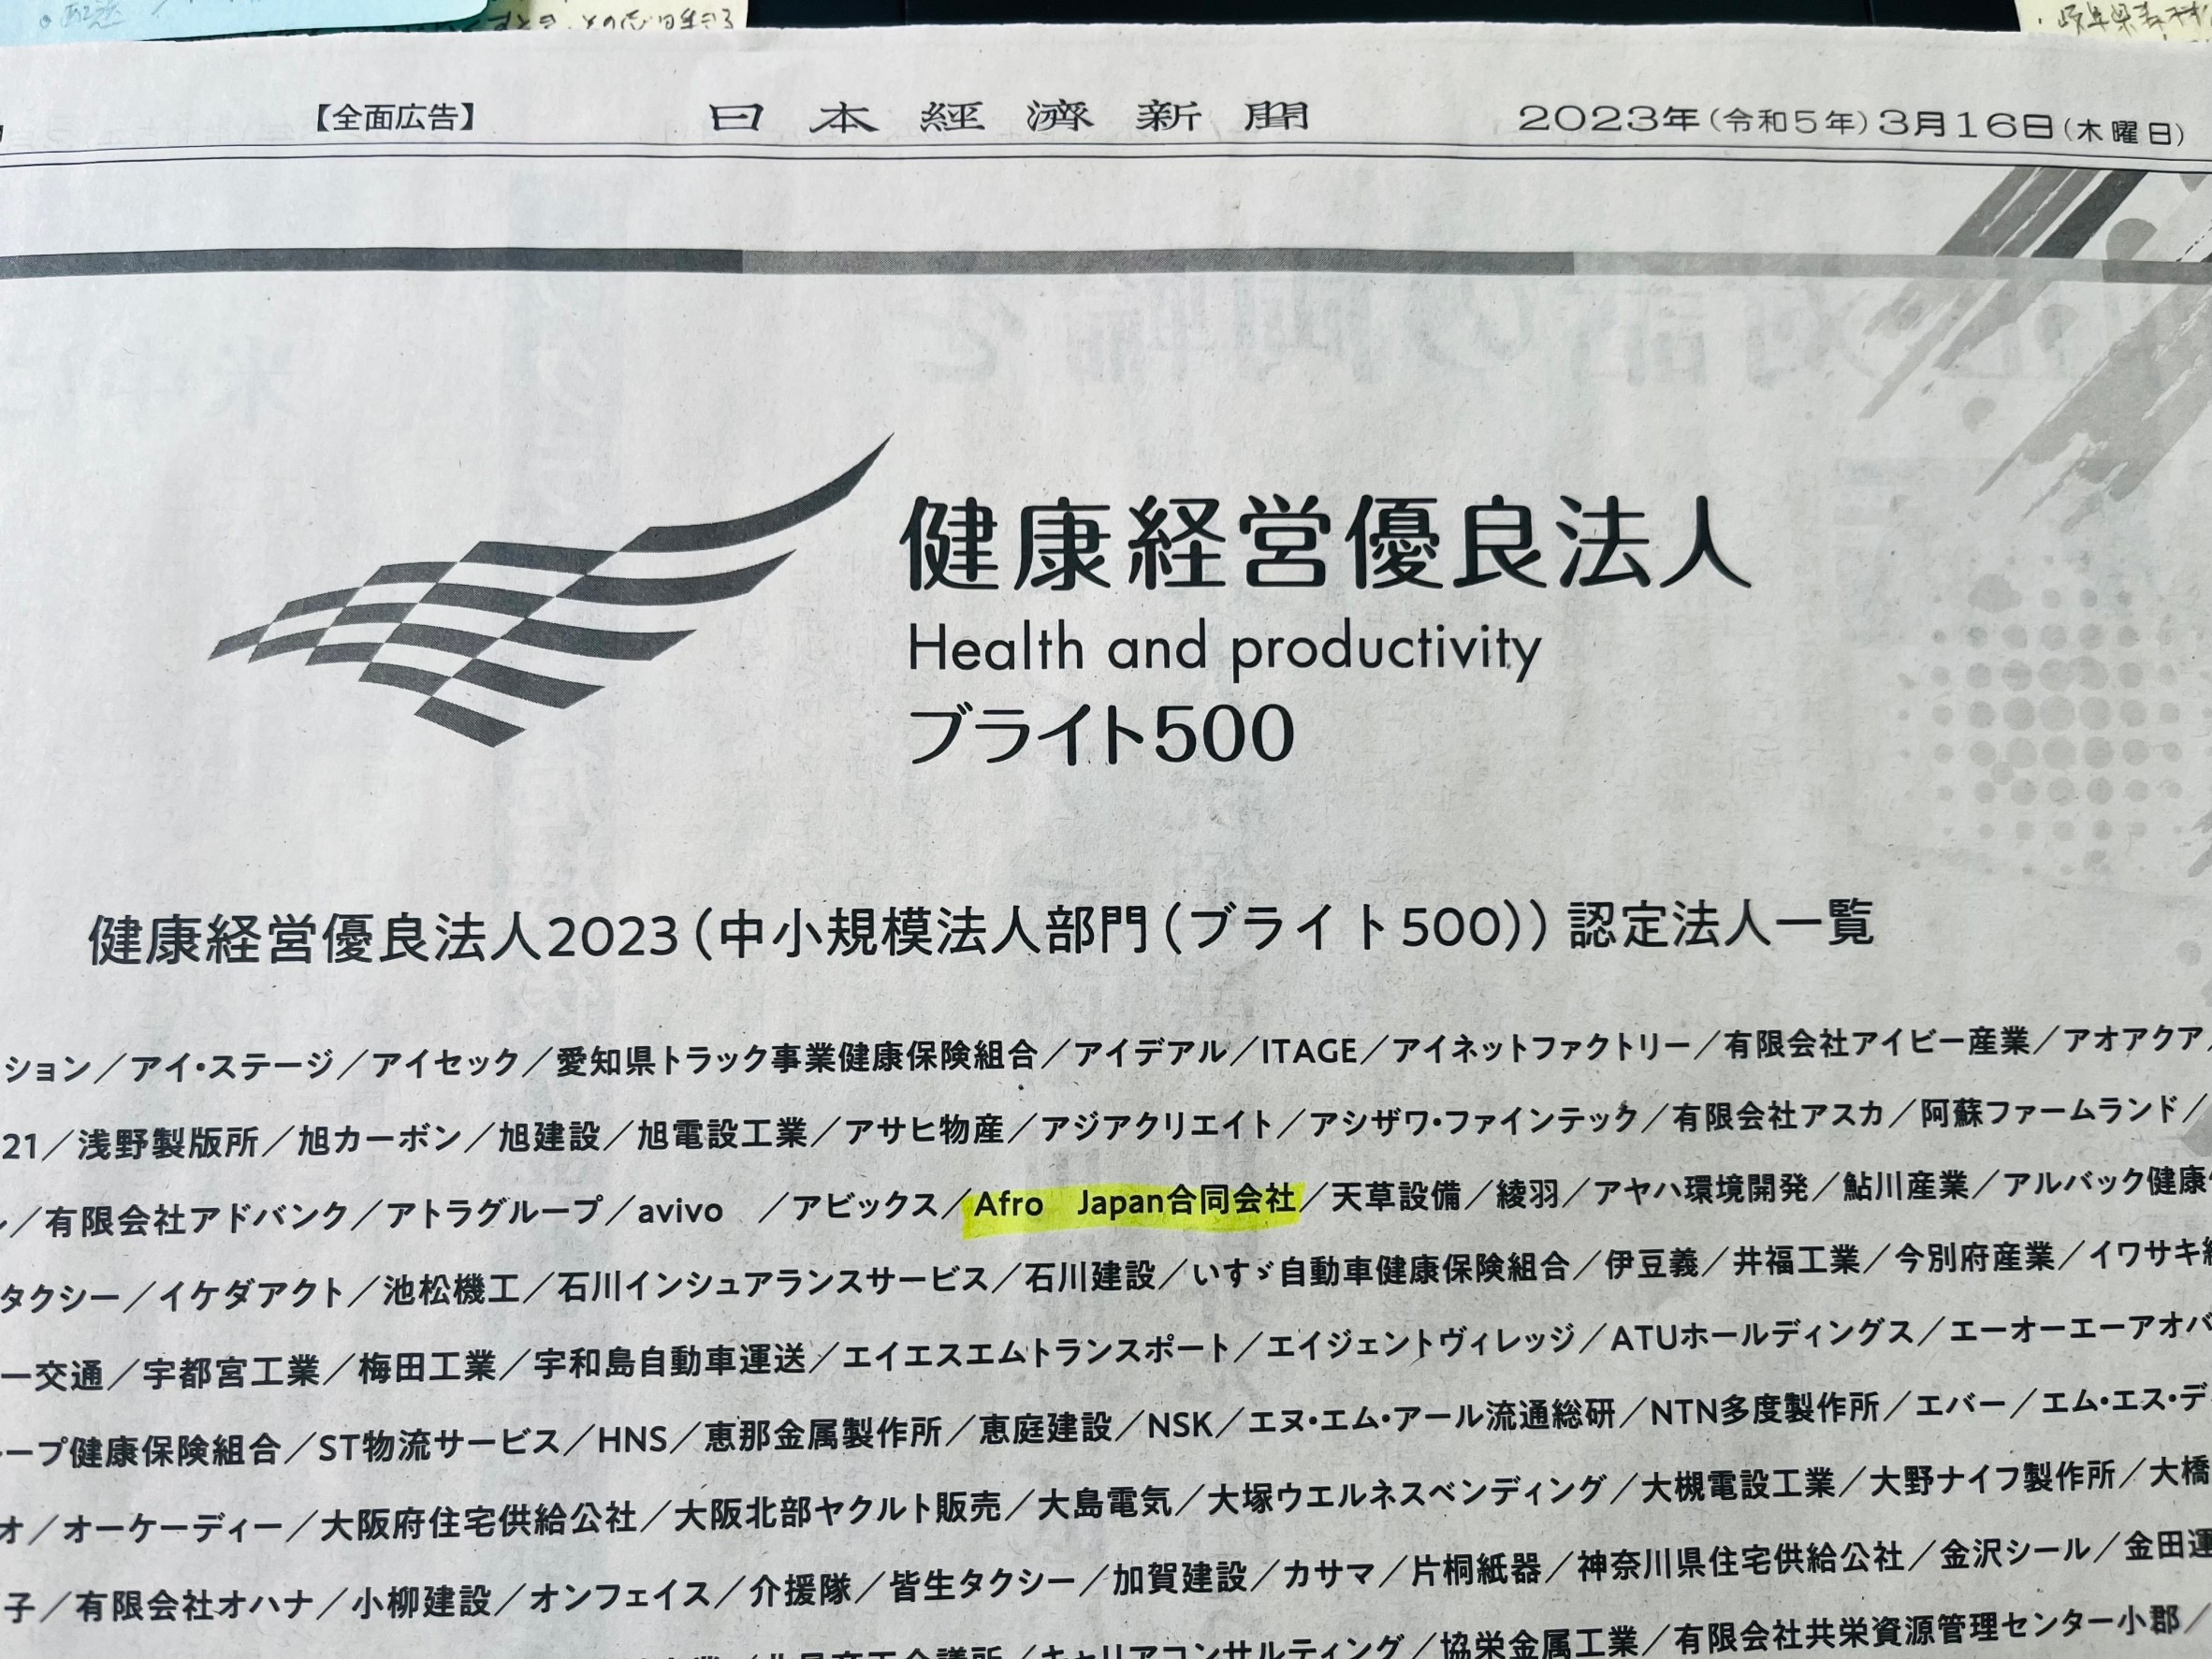 日本経済新聞朝刊に当社が紹介されました／連続認定 健康経営優良法人 ブライト５００／Afro Japan 合同会社